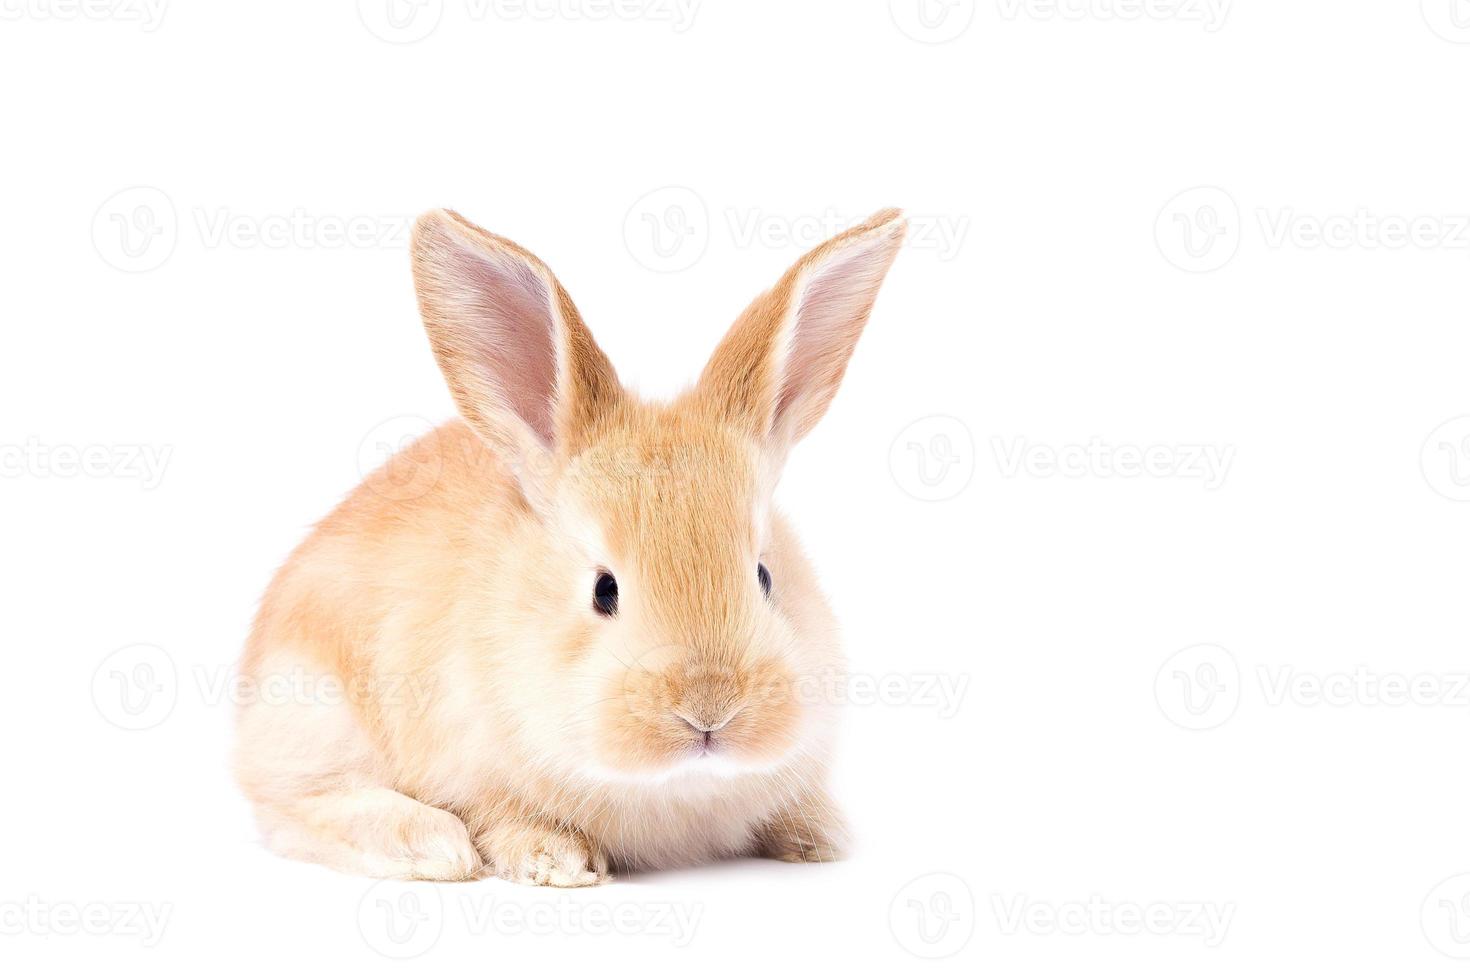 huvud av en ingefära kanin på en vit bakgrund. dekorativ hare. påsk begrepp. foto